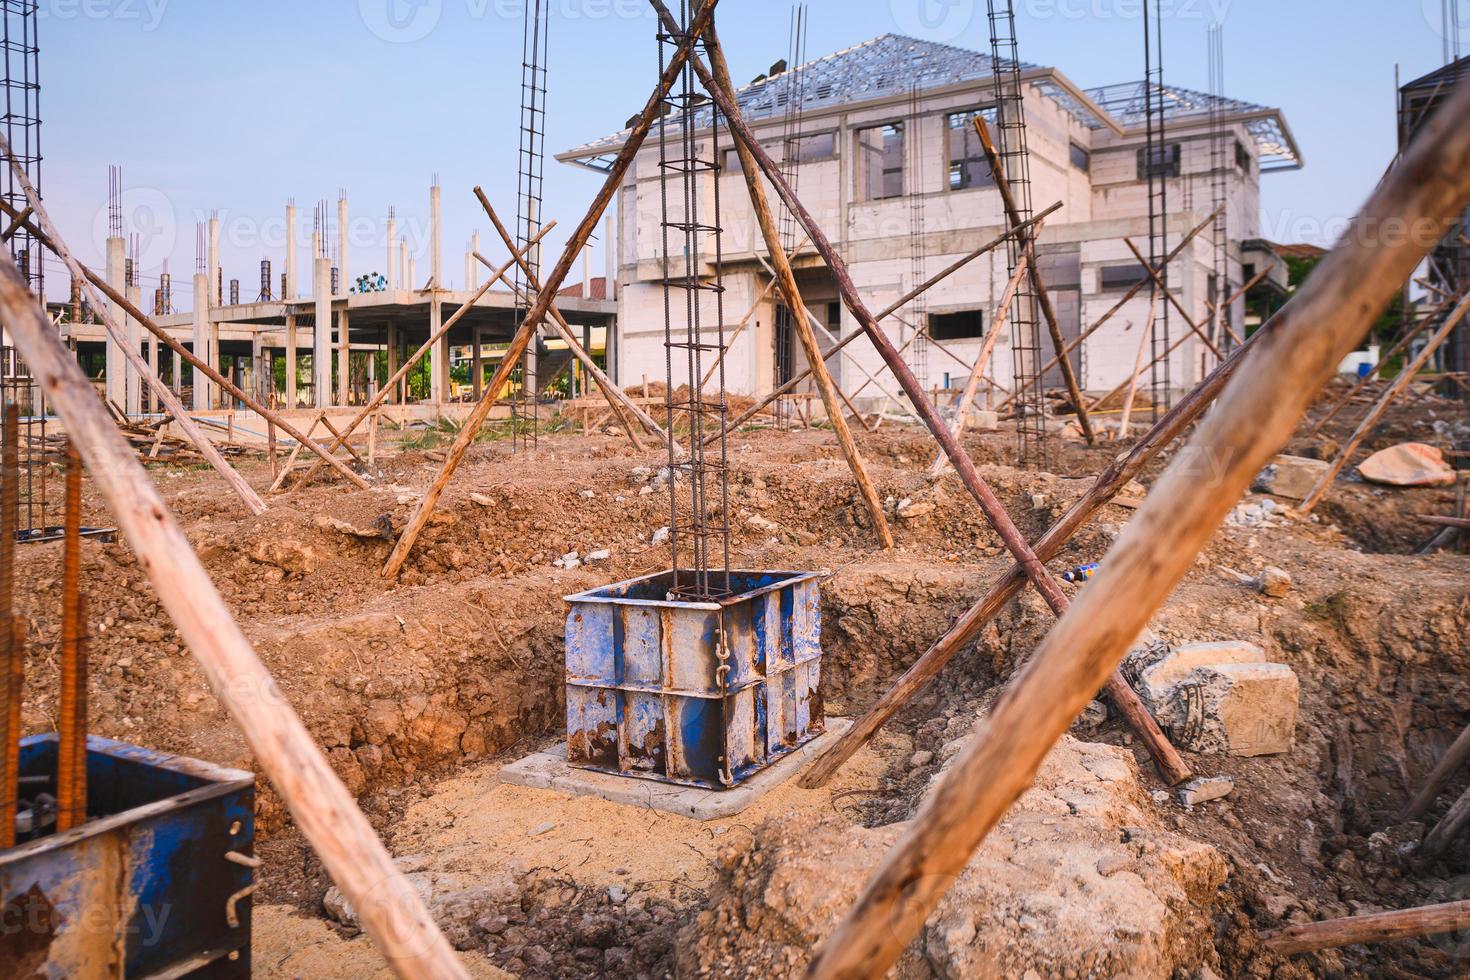 construção de fundação de concreto armado com estacas para suportar o peso do edifício foto